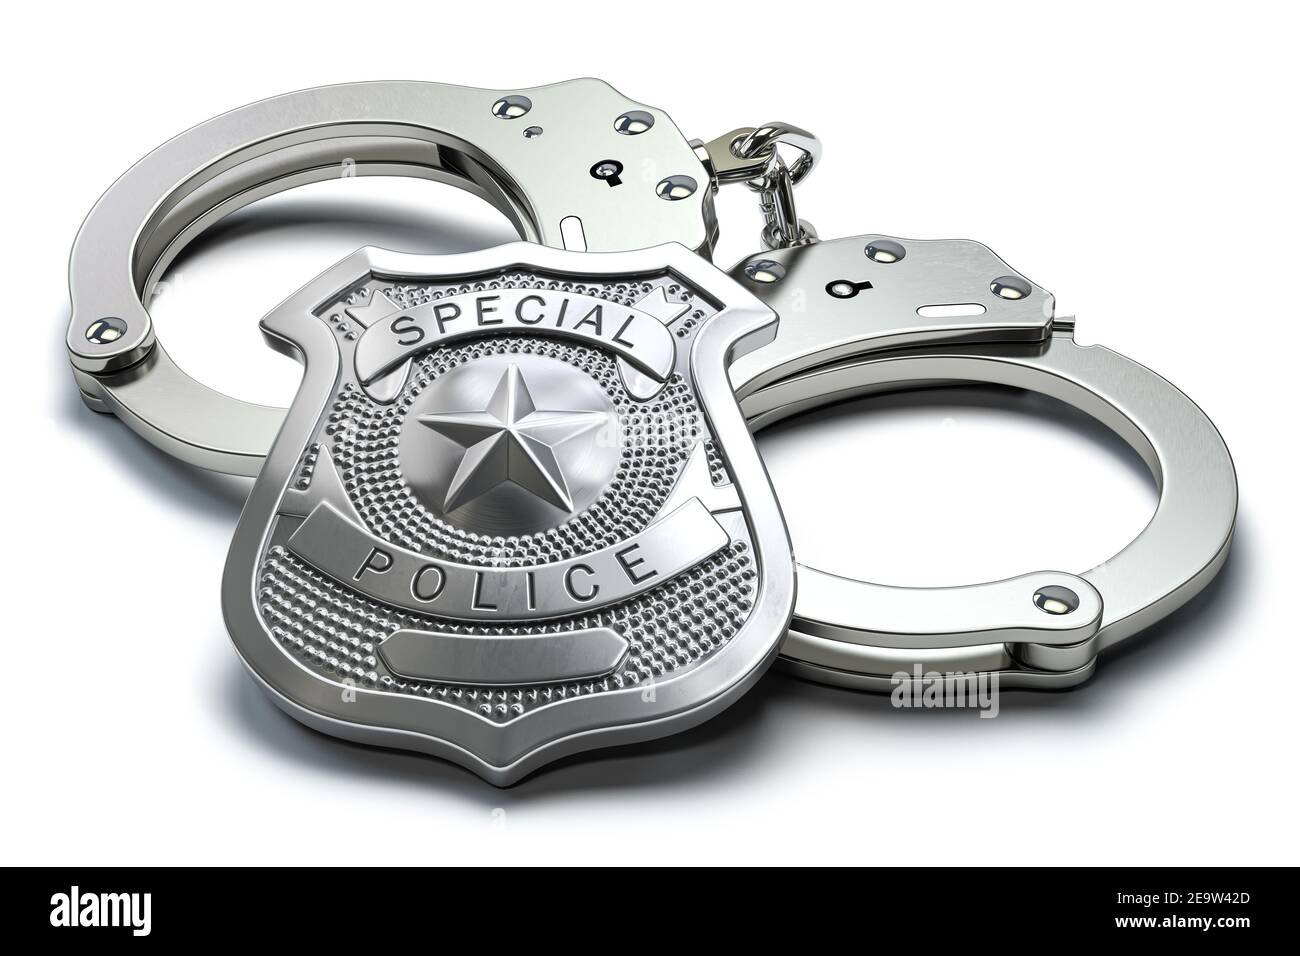 Badge de police spécial et menottes isolés sur fond blanc. Sécurité et application de la loi. illustration 3d Banque D'Images